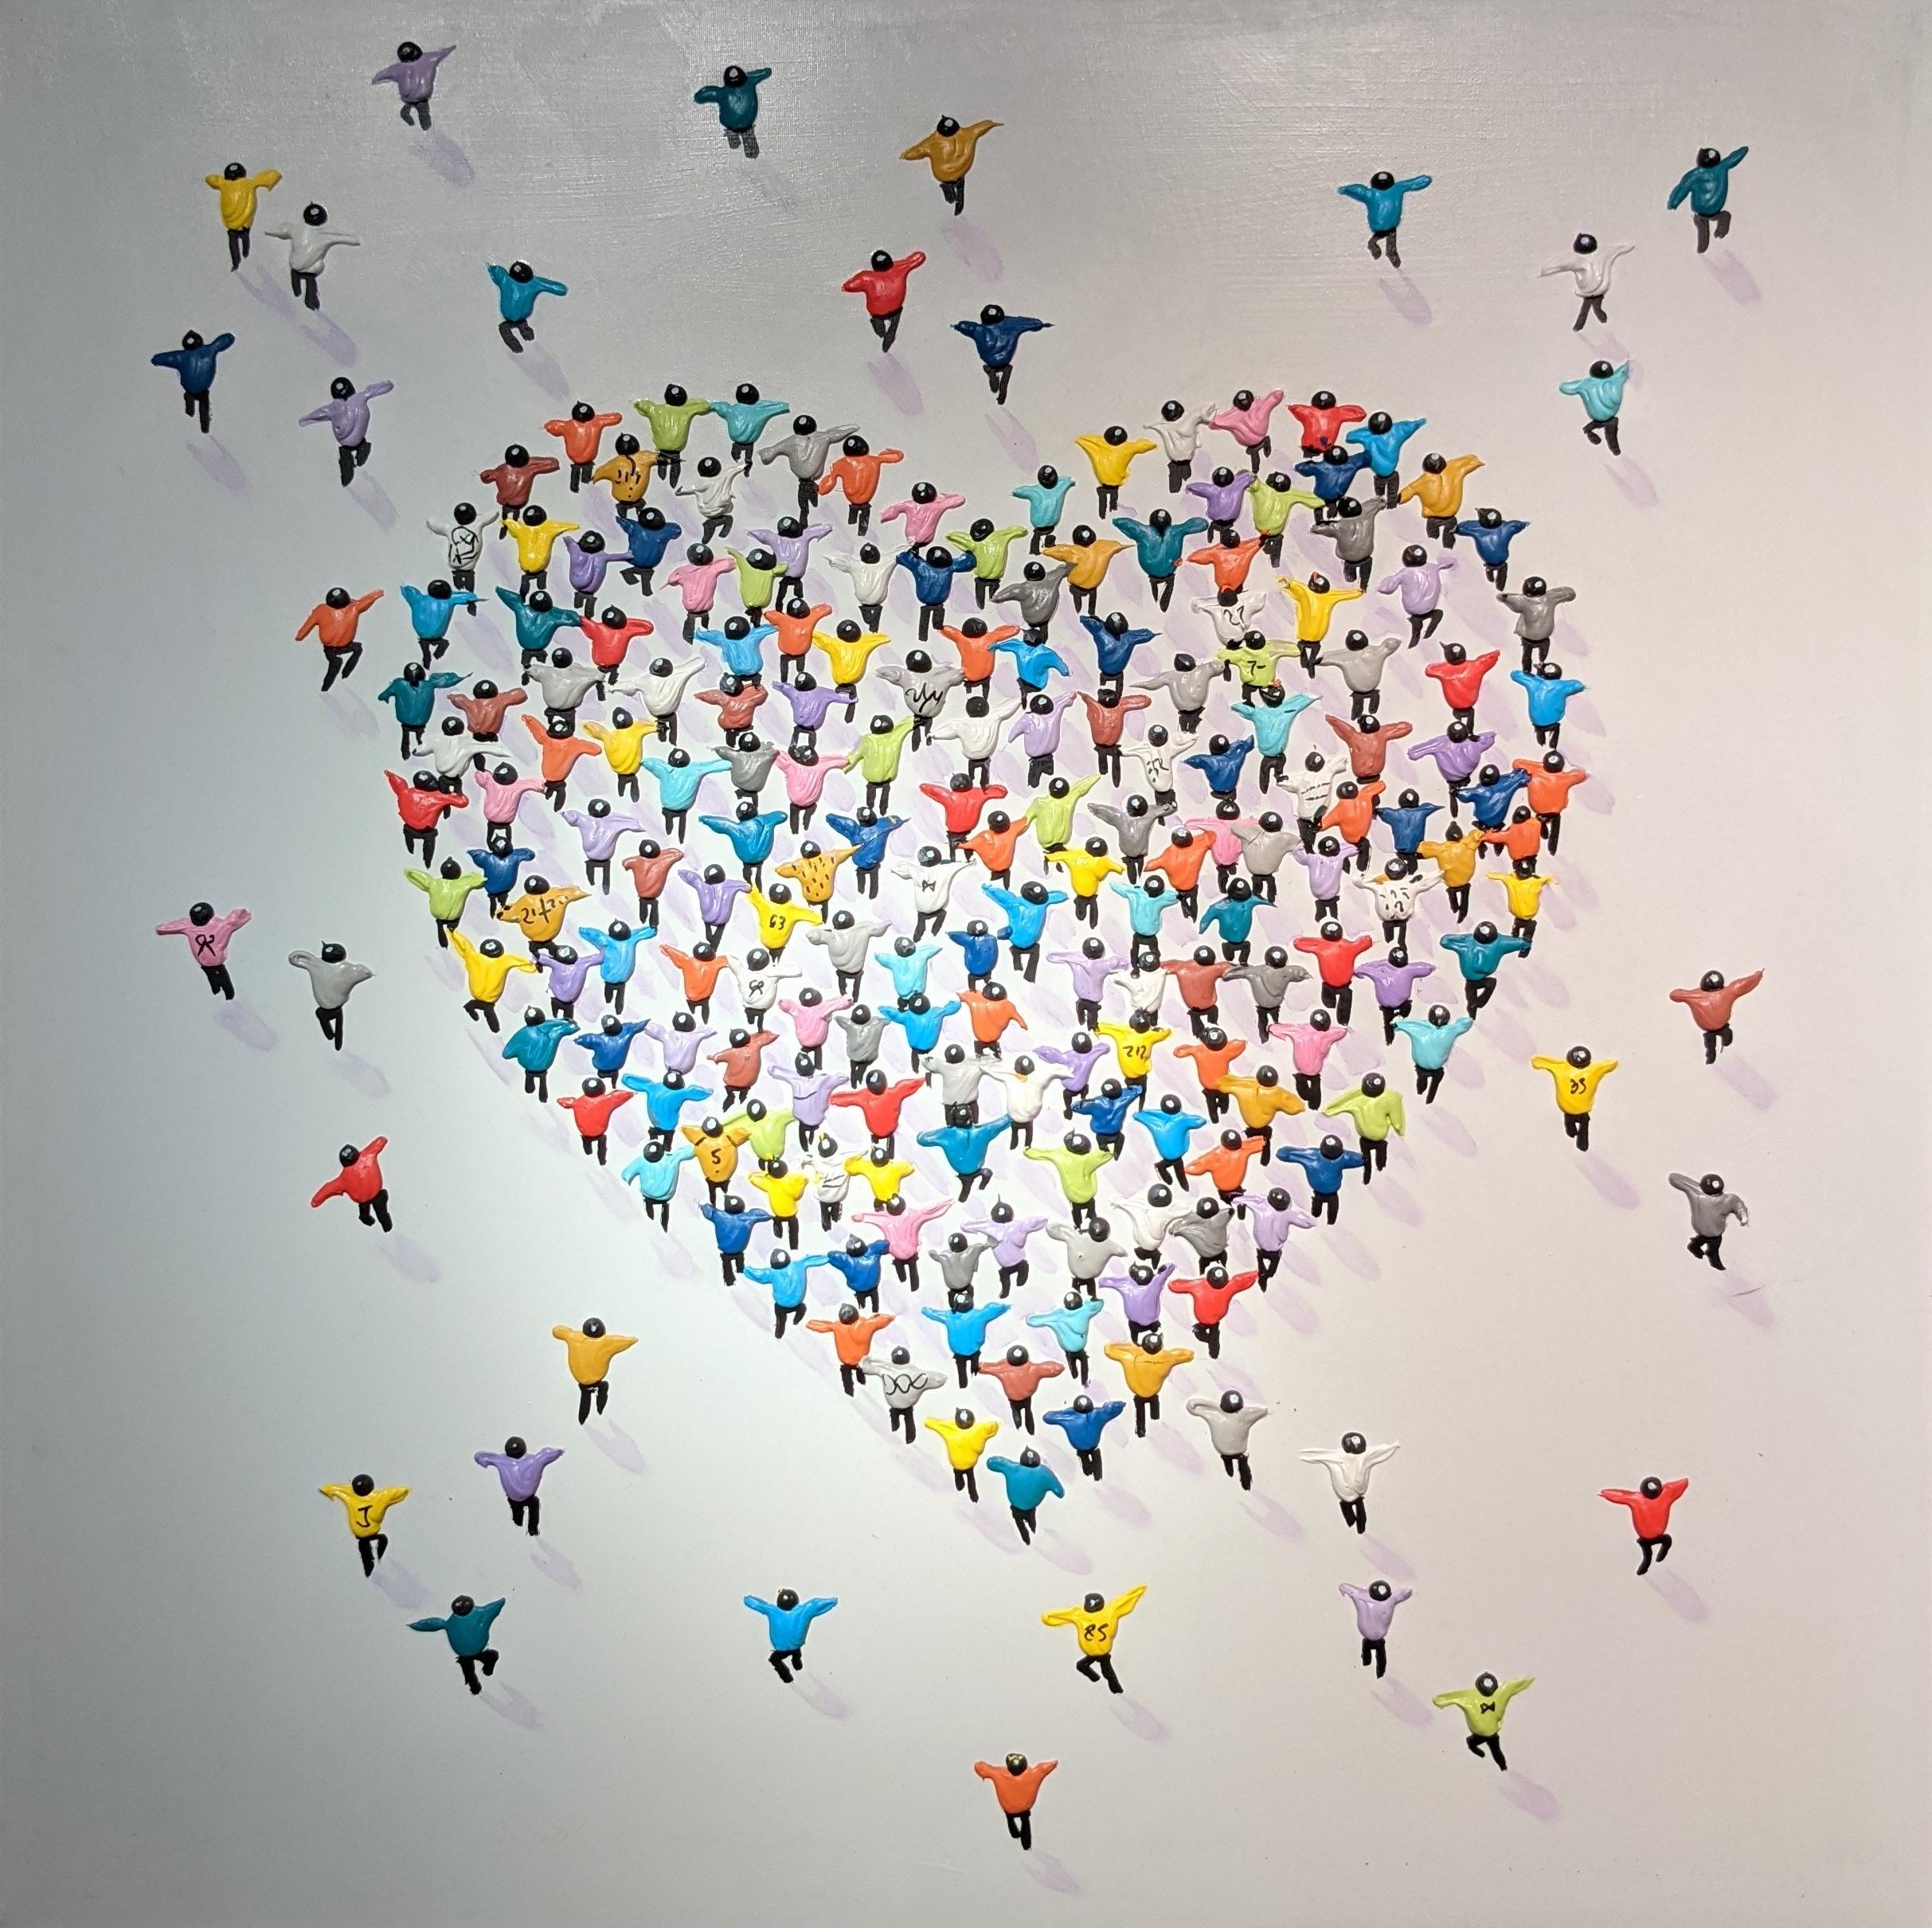 Figurative Painting Max Todd - « All Of my Heart », peinture figurative contemporaine colorée en 3D, danse, amour